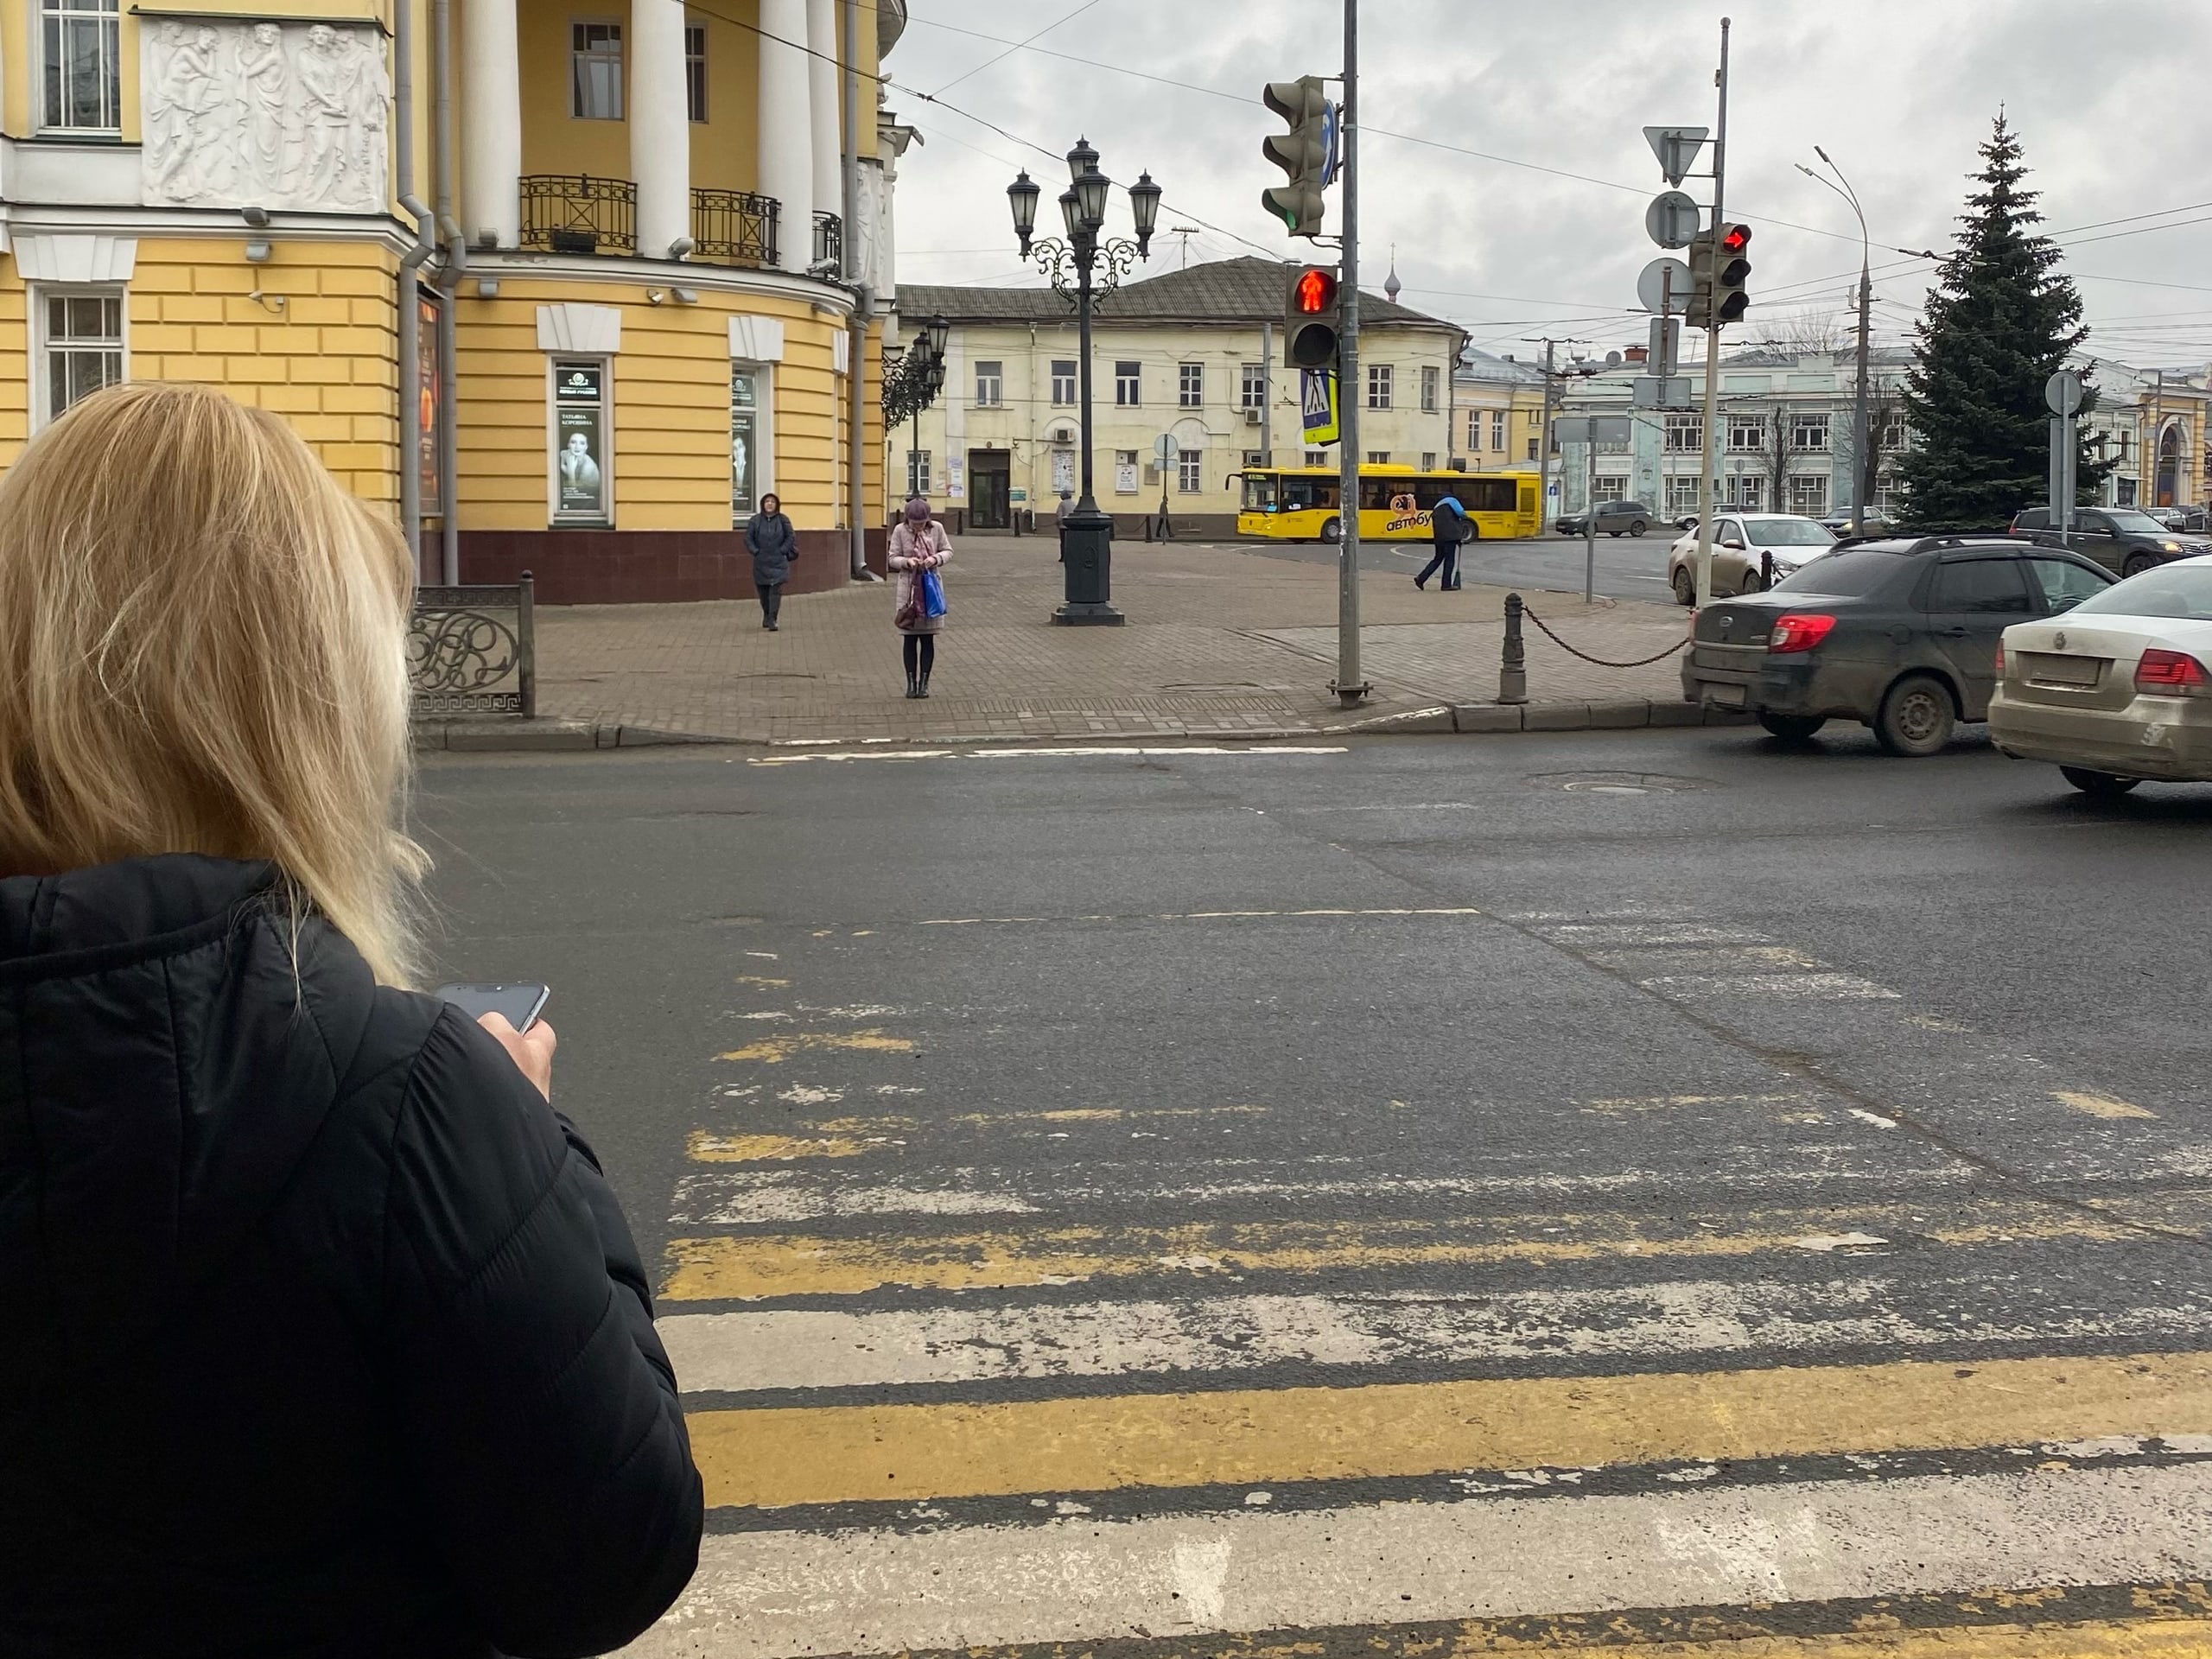   В Ярославле устанавливают указатели с медведями высотой в 7 метров